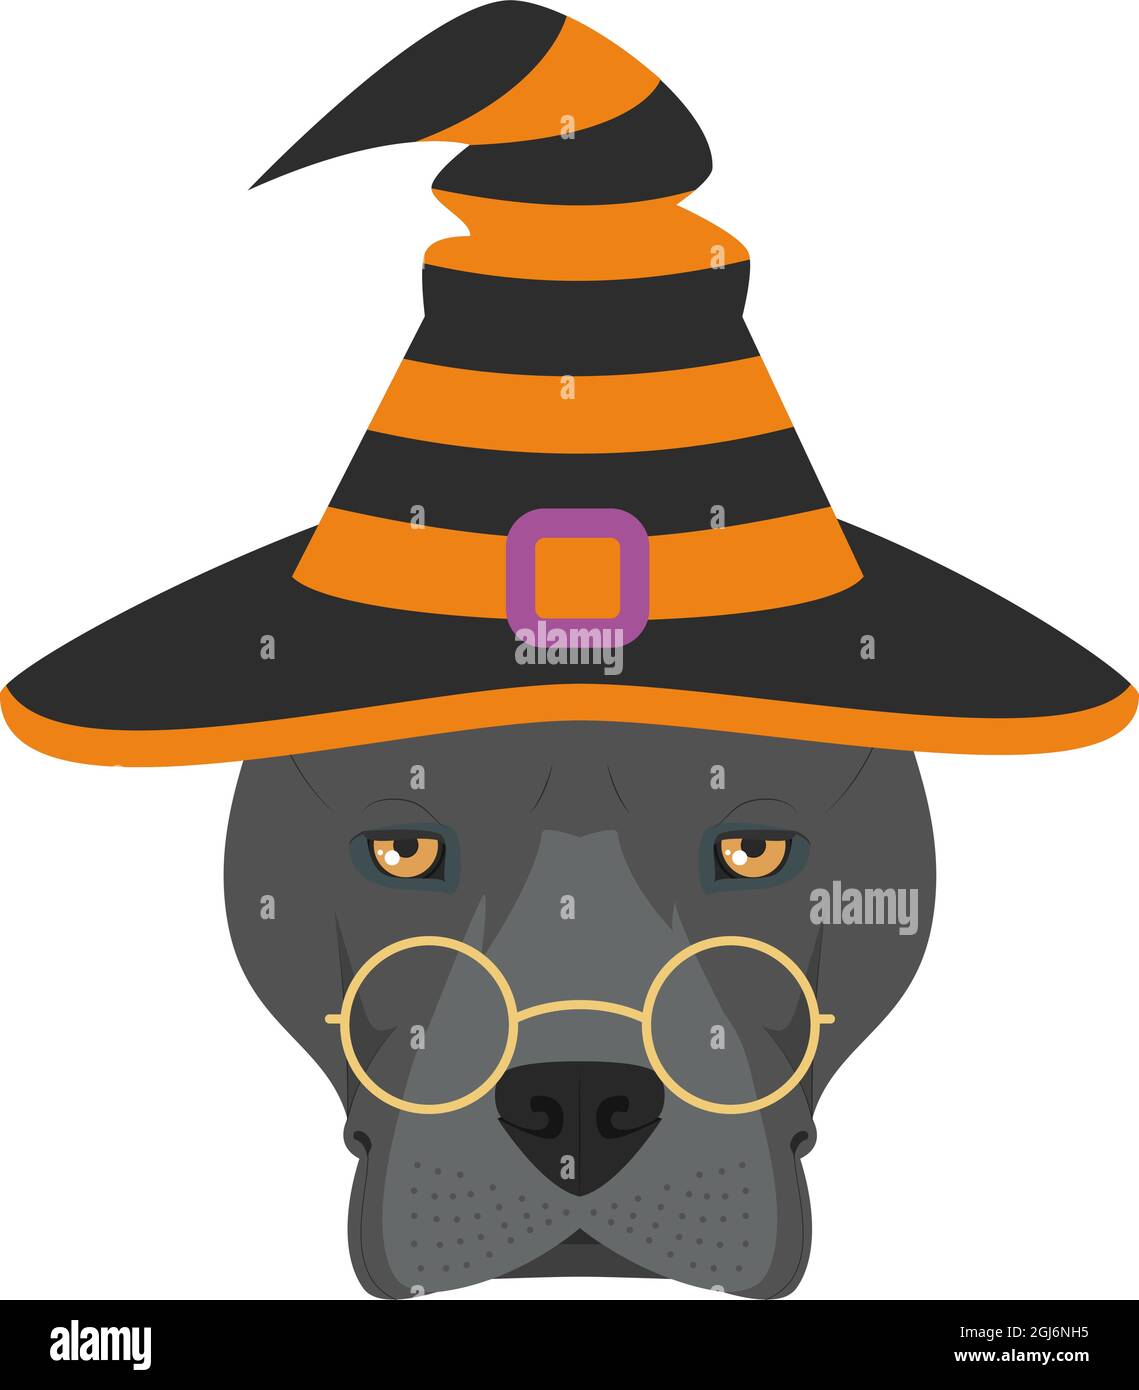 Carte de voeux pour Halloween. Chien américain Staffordshire Terrier habillé comme une sorcière avec des lunettes et un chapeau noir et orange Illustration de Vecteur